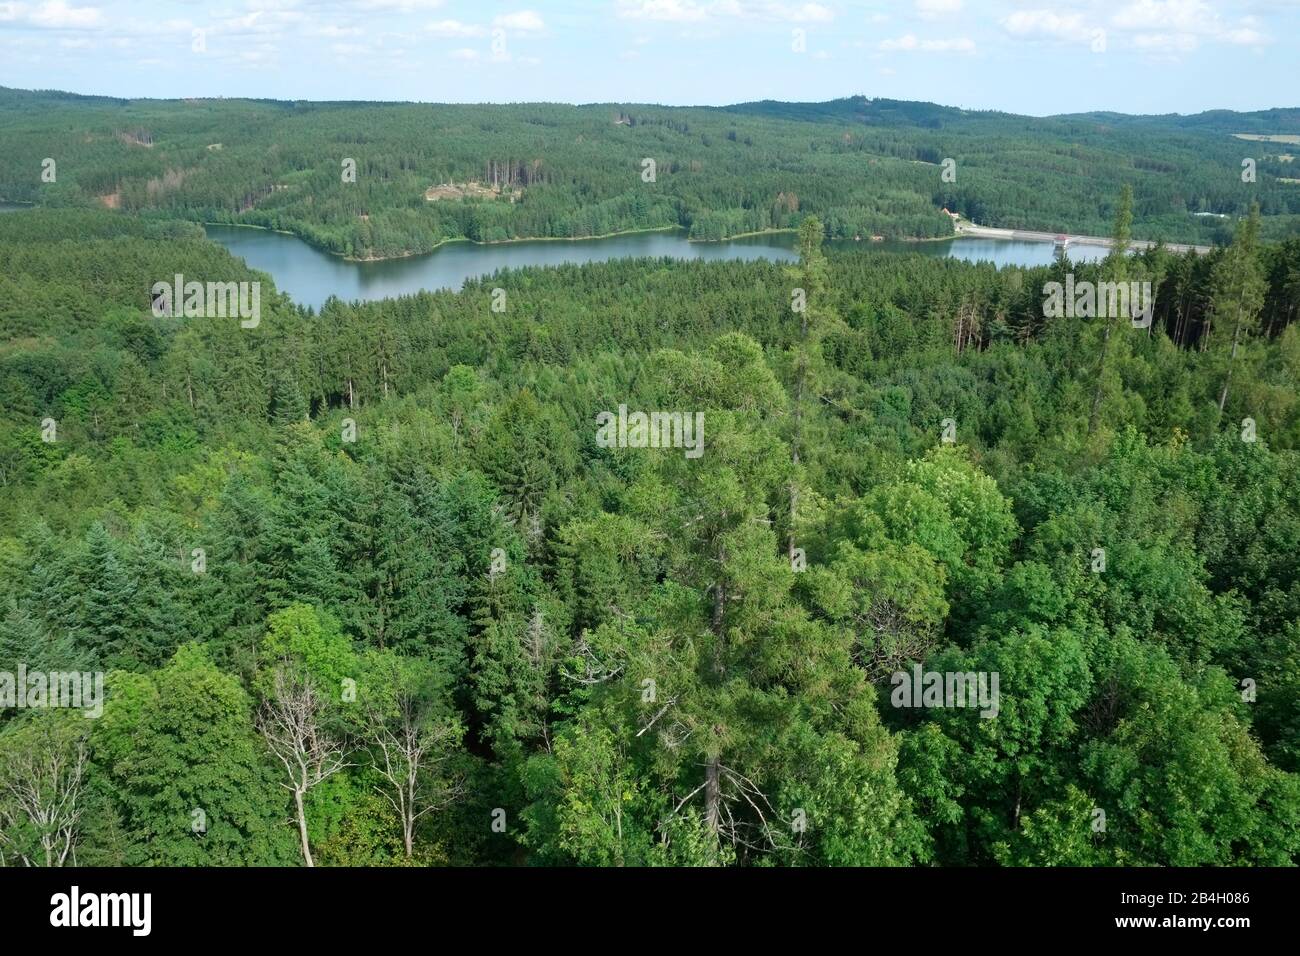 Der Wasserreservoir Landstejn in den Mittelstoren des tschechischen Kanada versorgt mehrere Townships mit Trinkwasser, darunter Slavonice an d Dacice Stockfoto